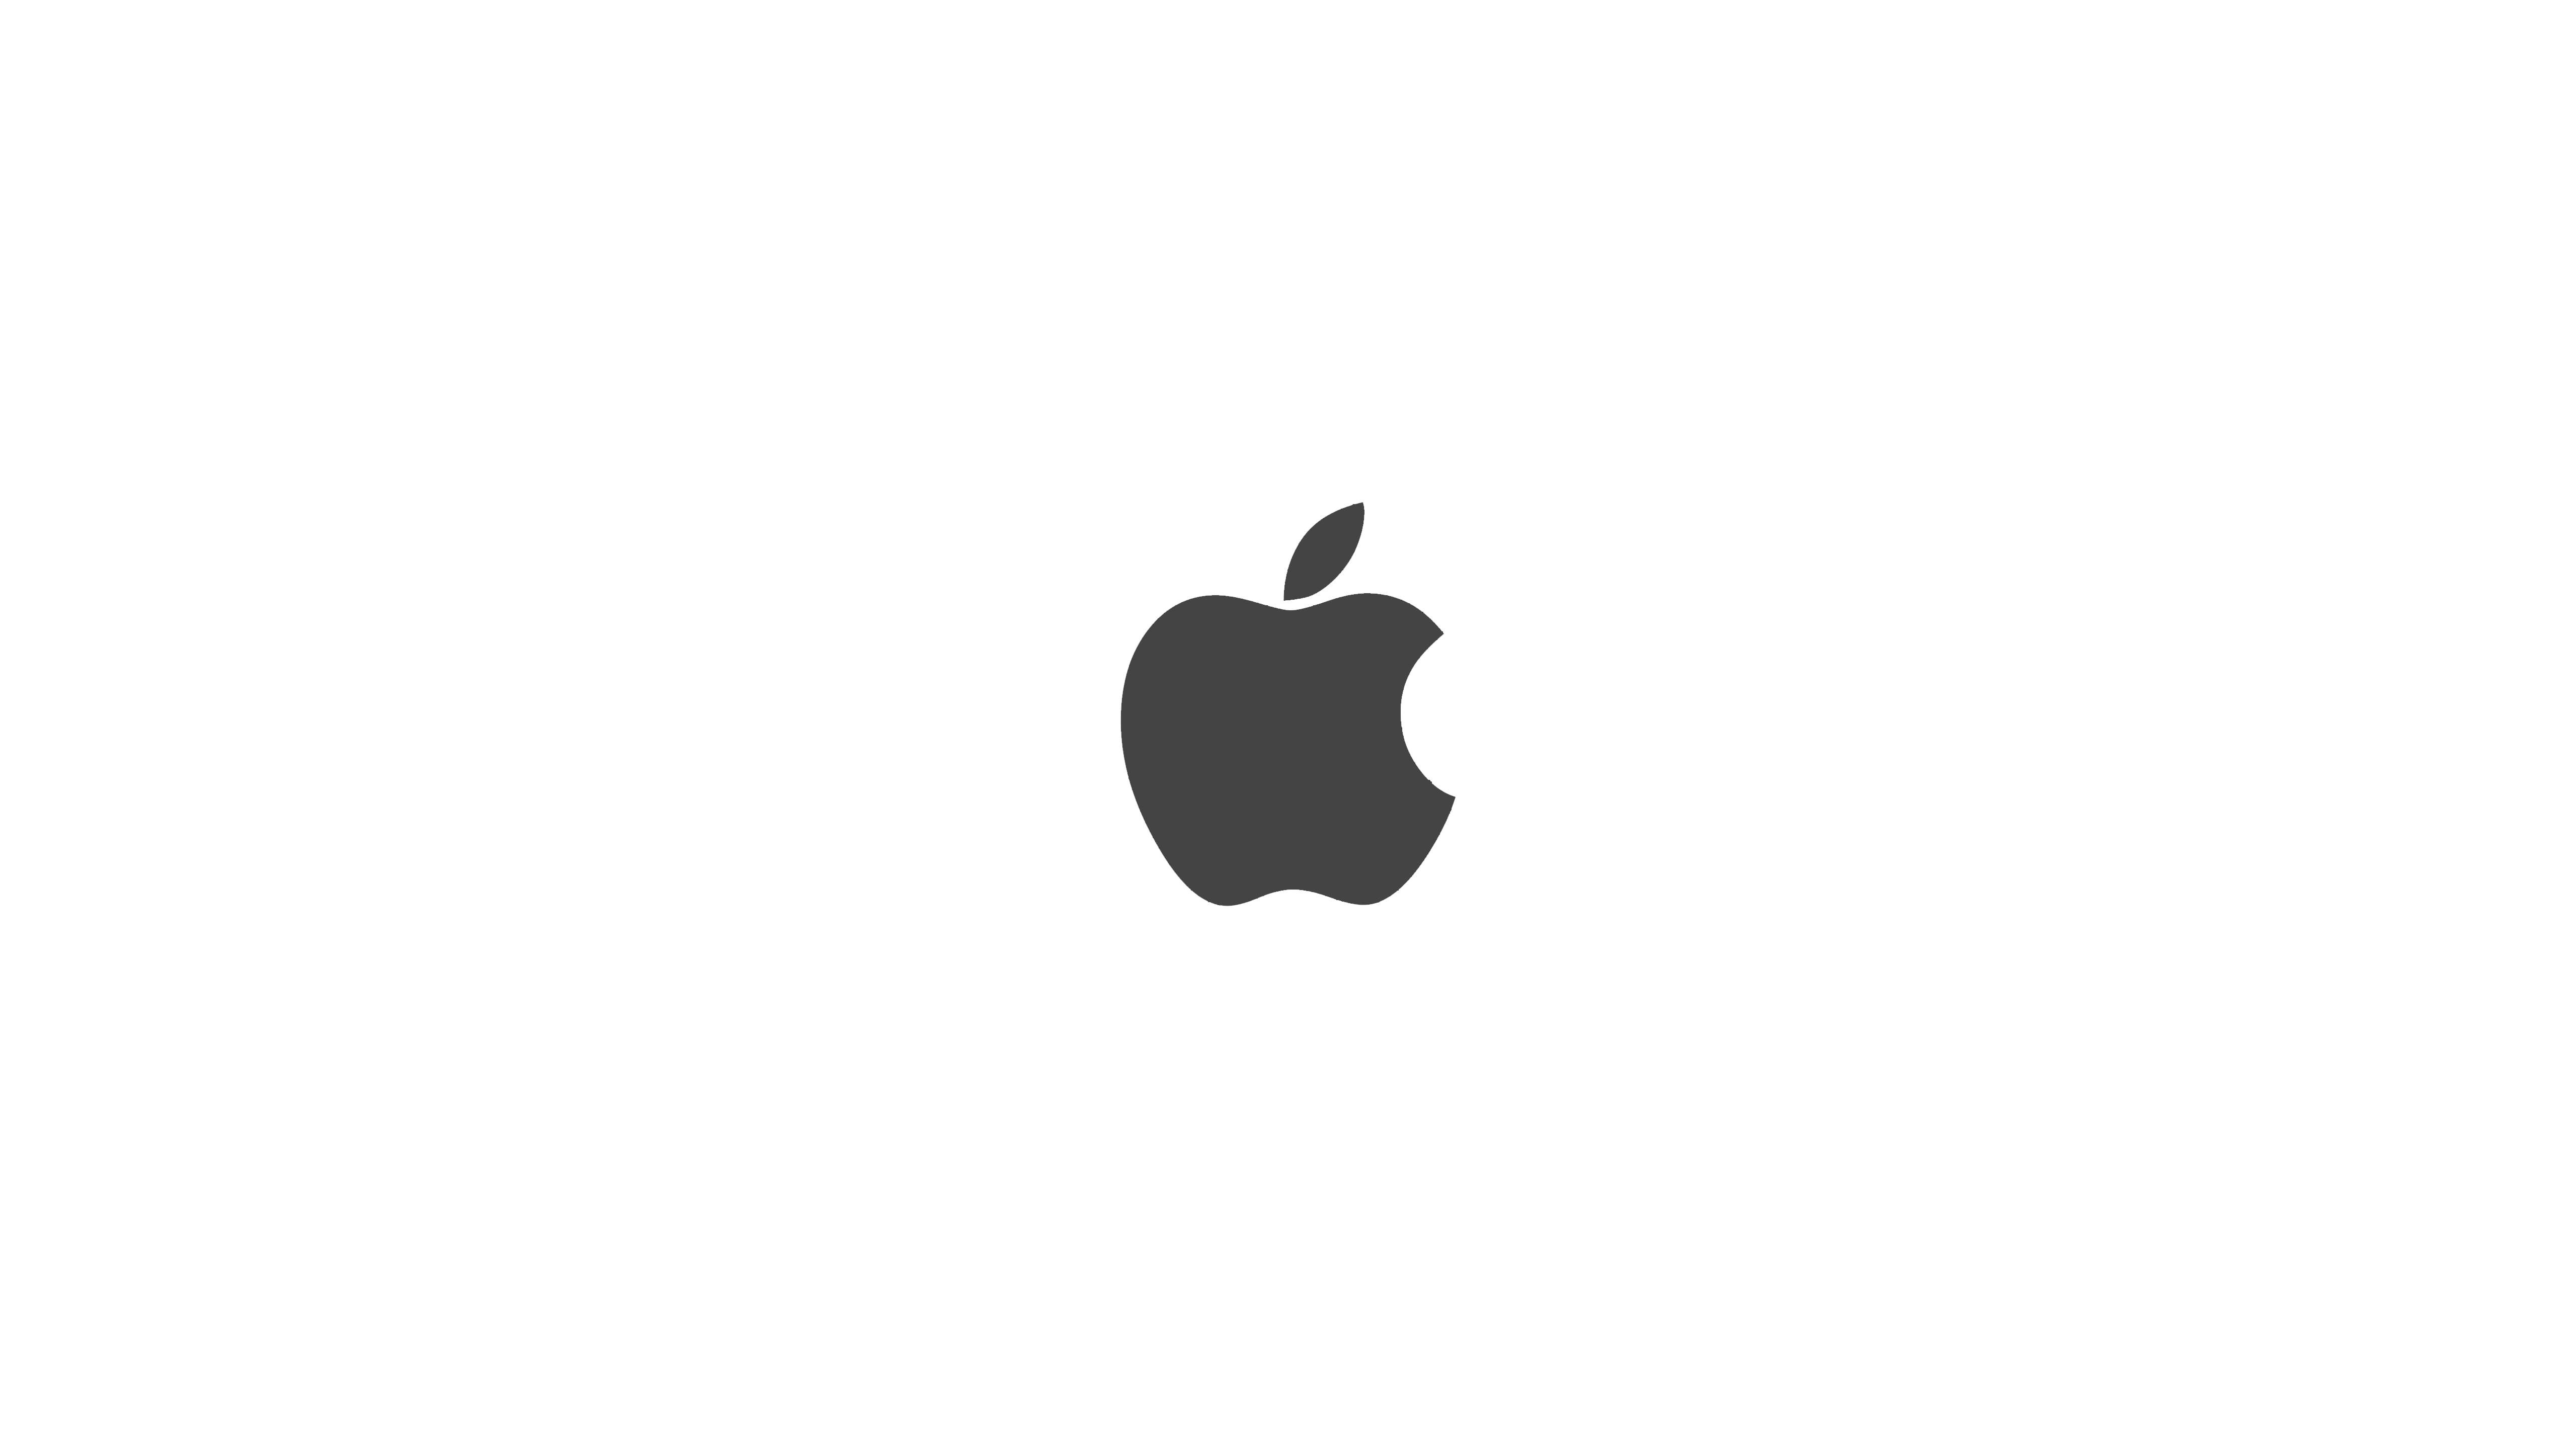 Apple Logo Black And White Wallpaper Sc Desktop